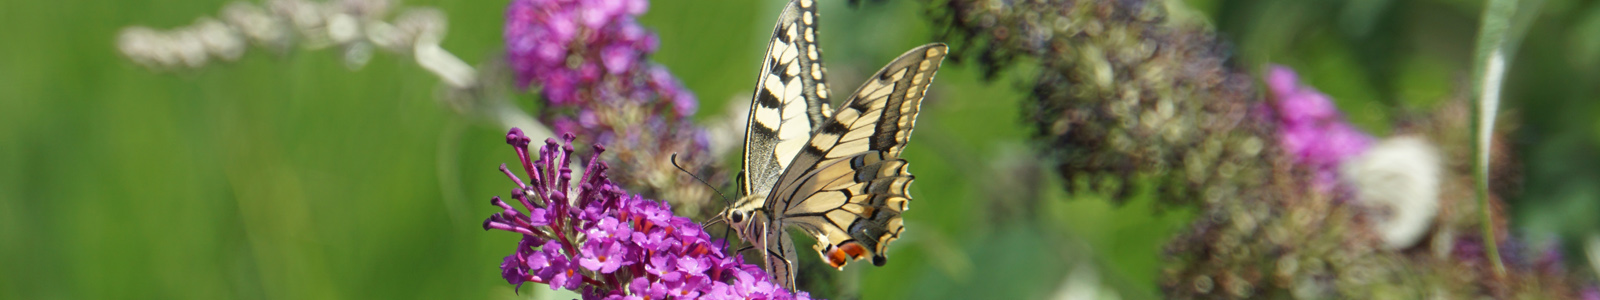 Schmetterling auf Blüte ©DLR